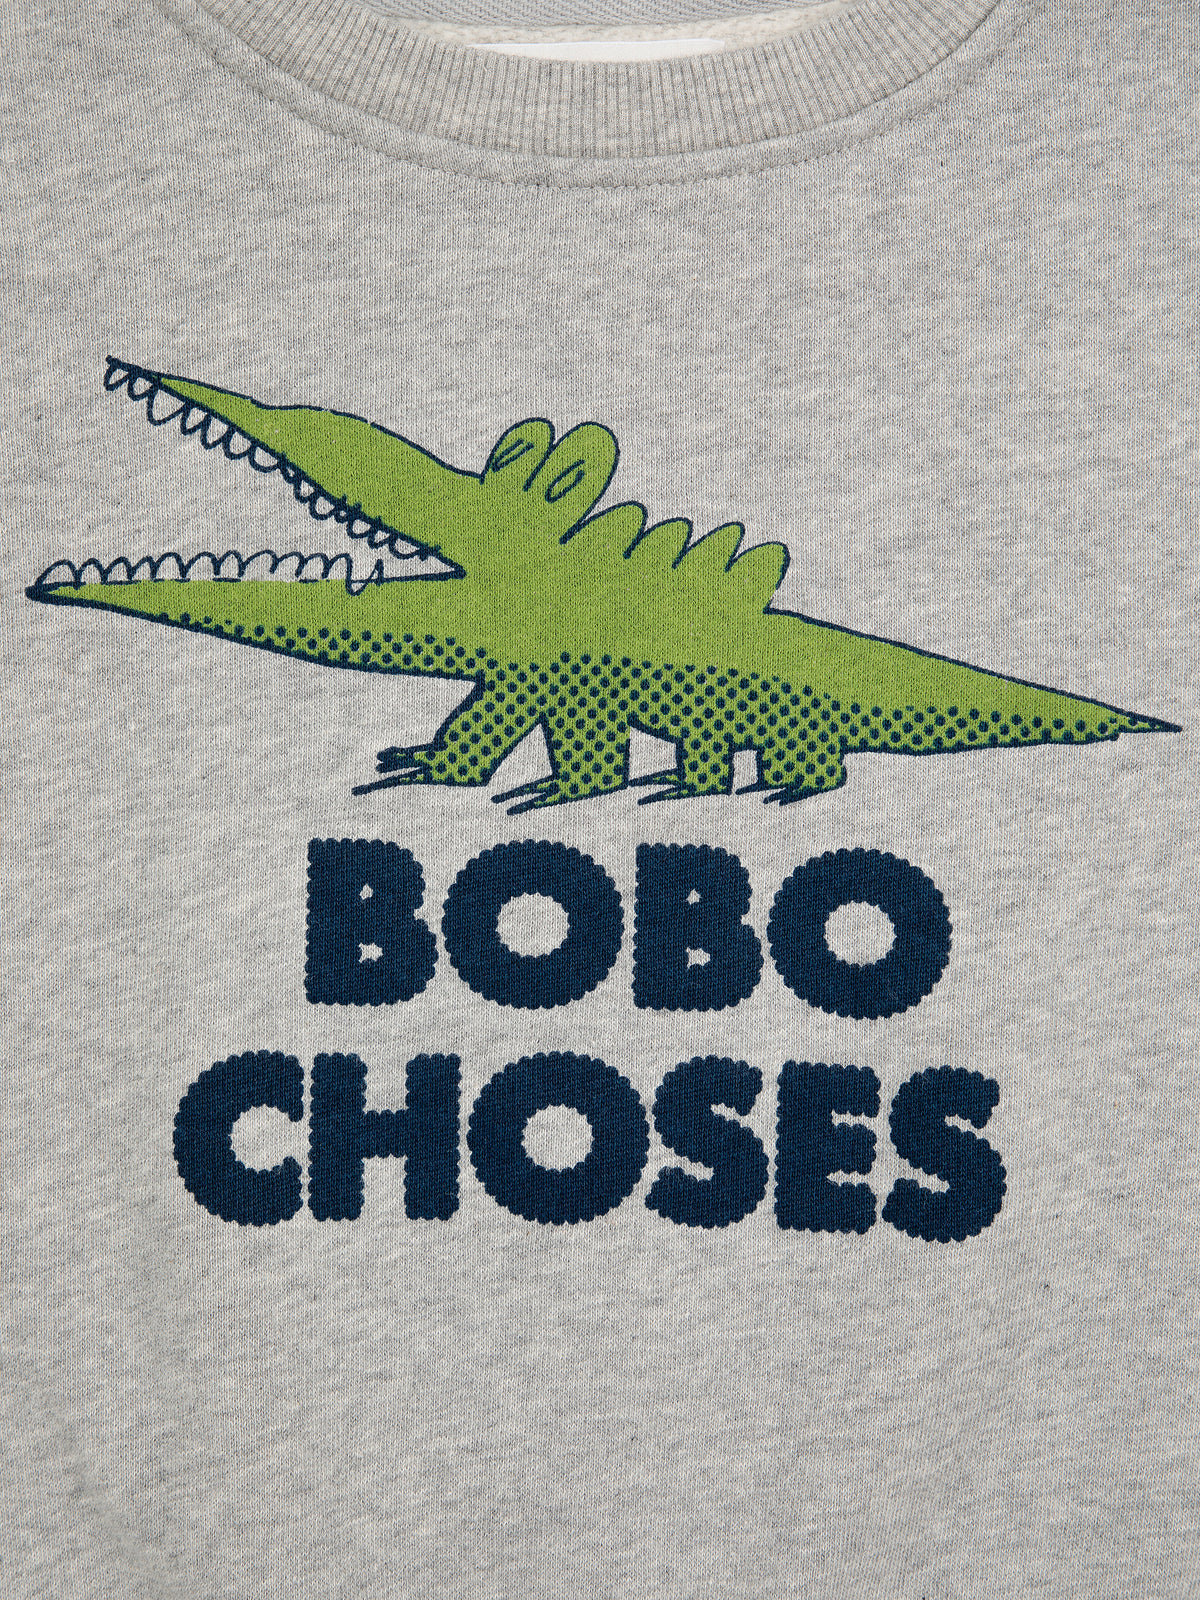 Talking Crocodile sweatshirt